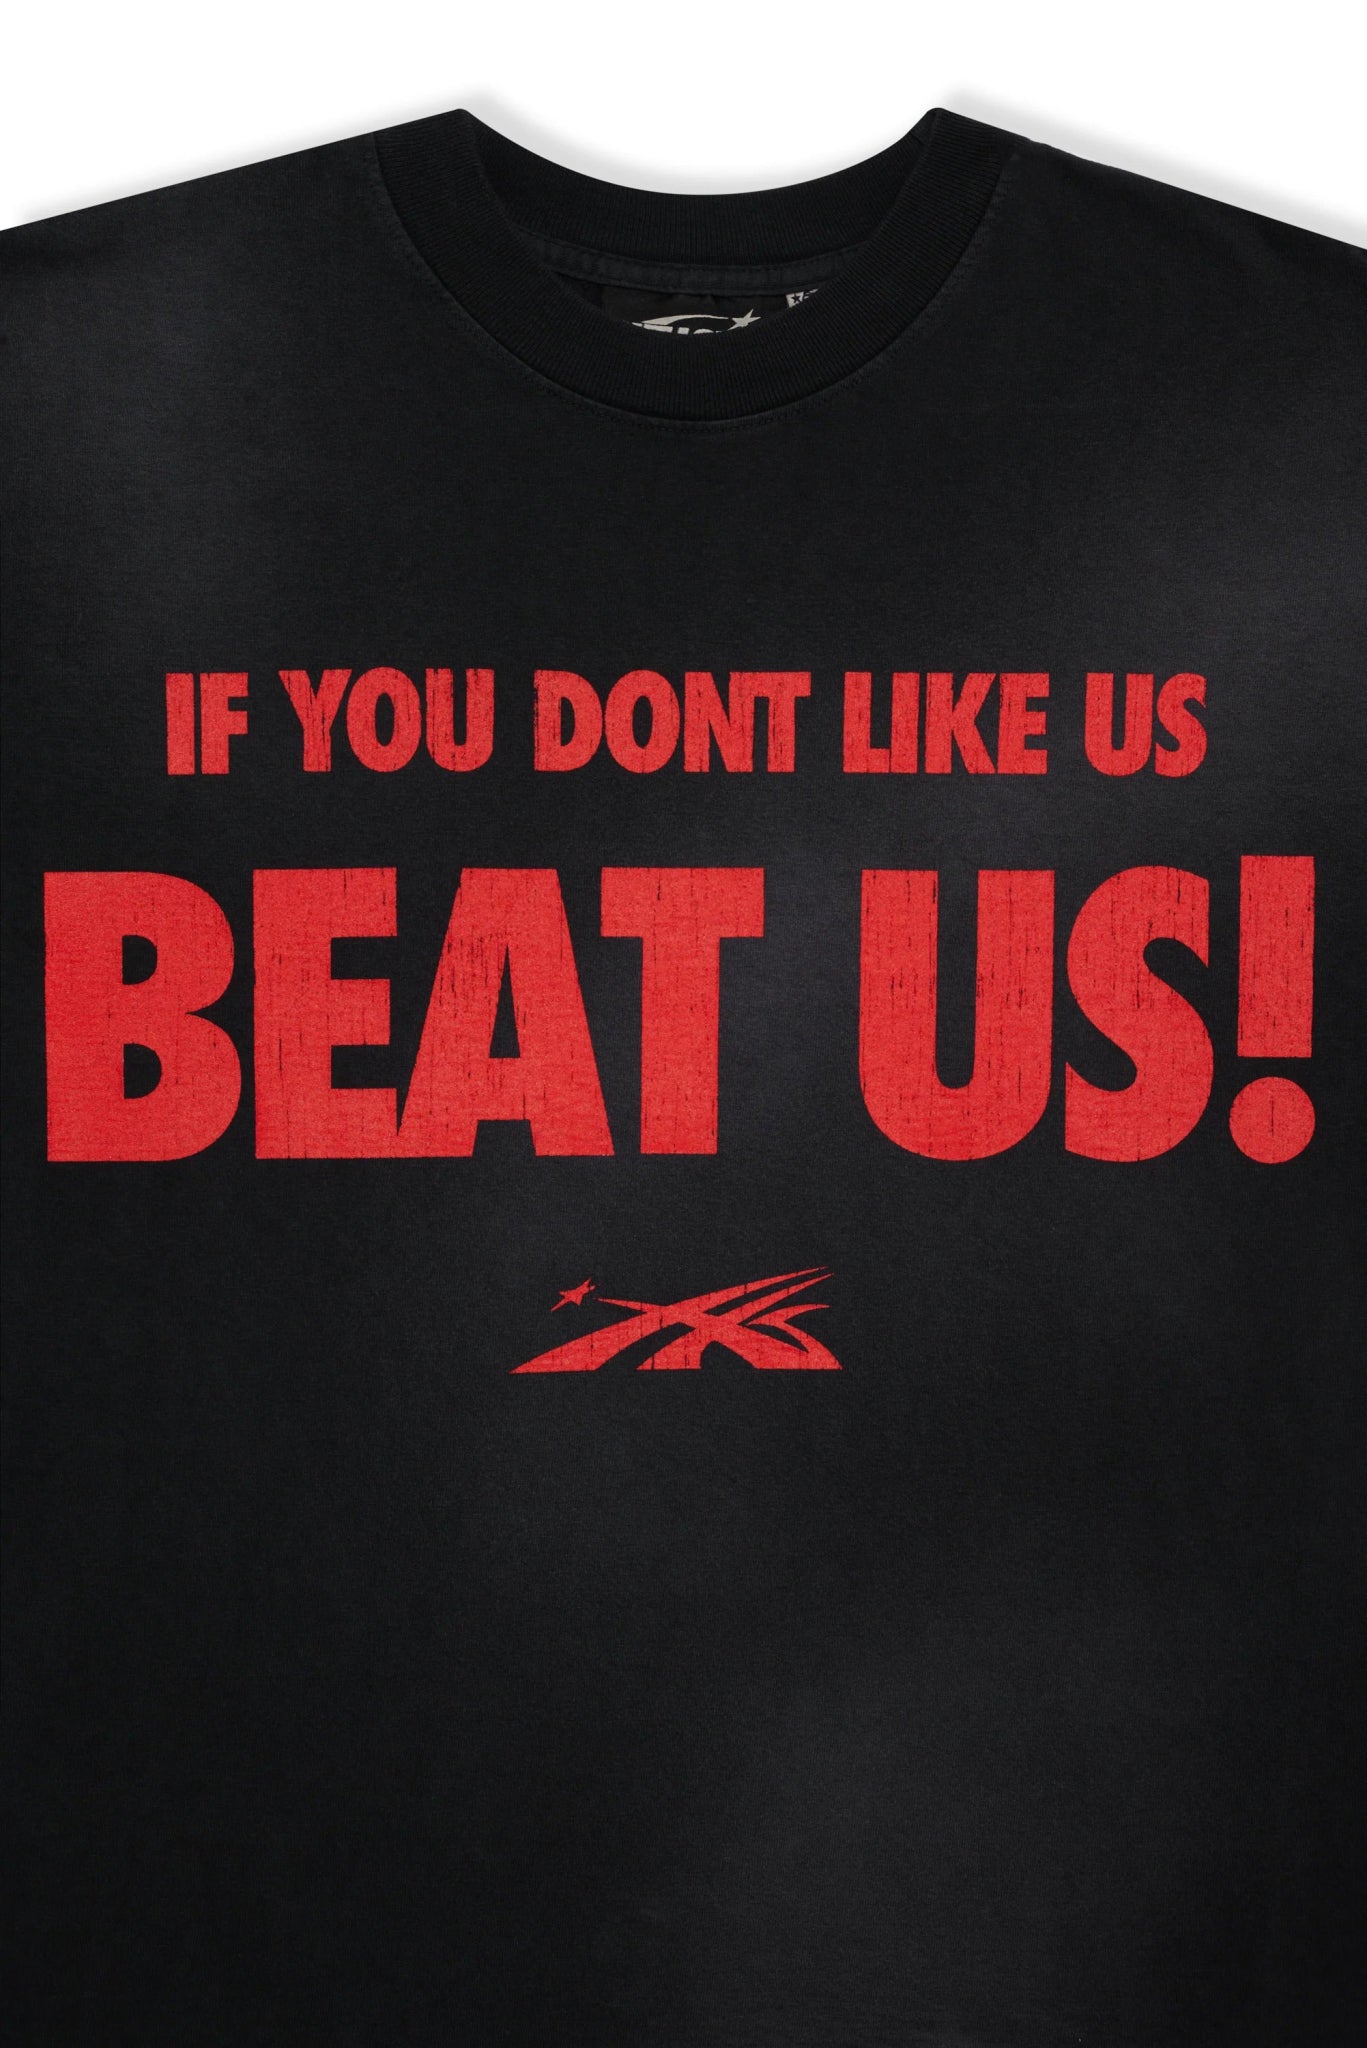 Hellstar Sports Beat Us! T-Shirt (Red/Black) - Sneakersbe Sneakers Sale Online